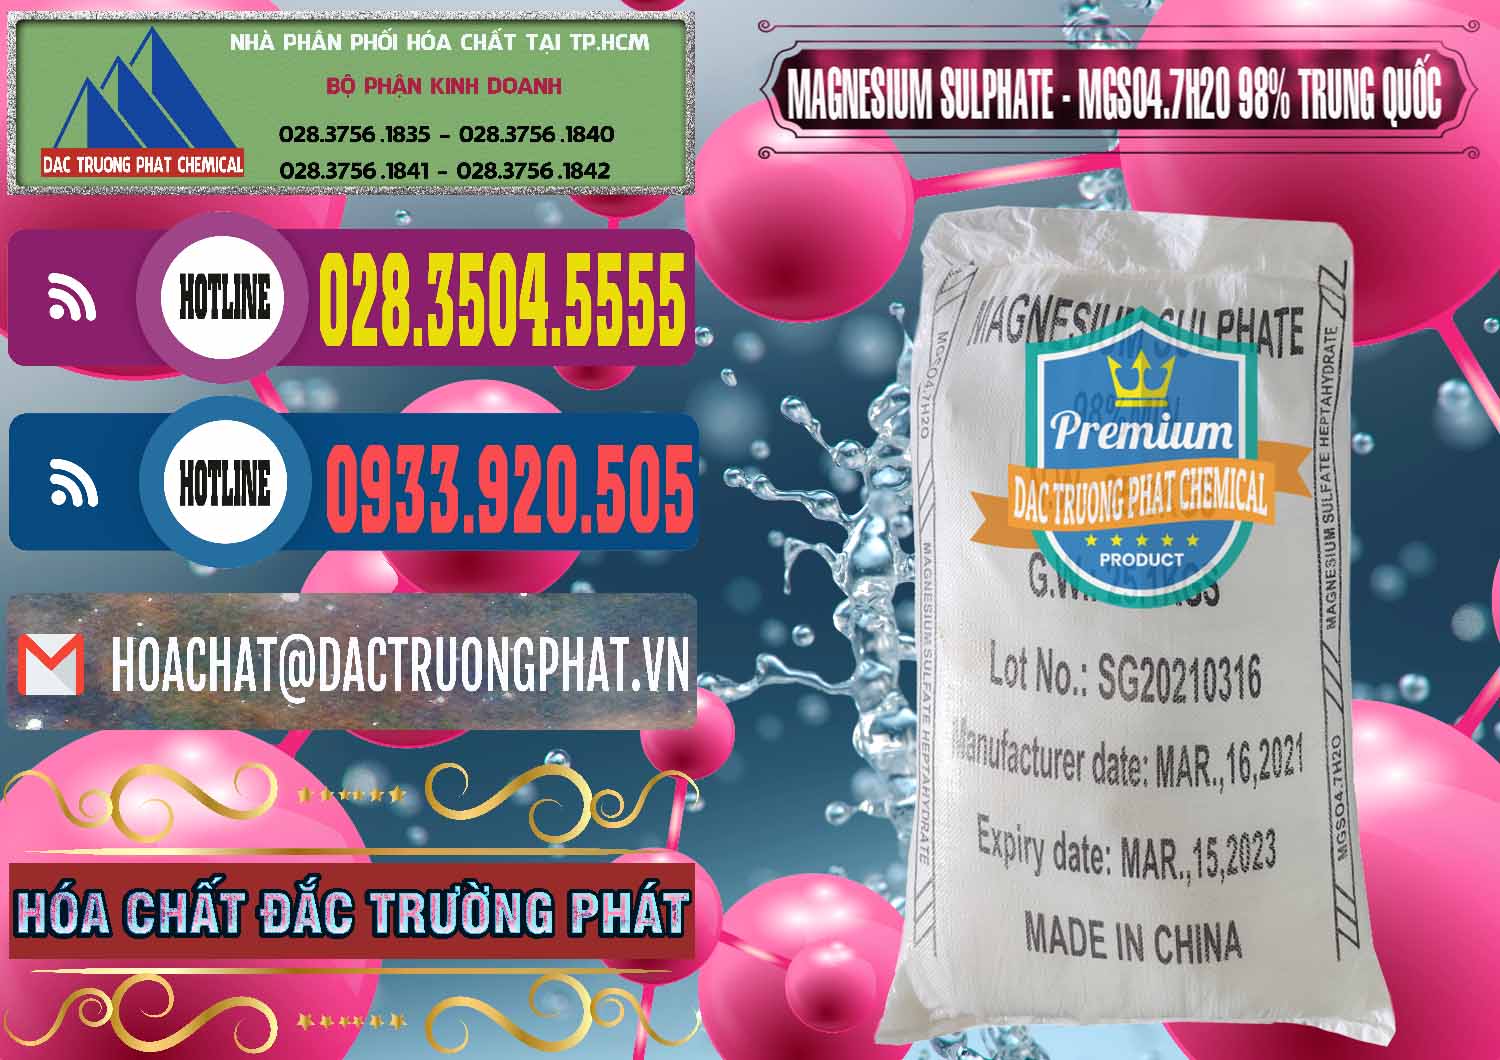 Cty bán _ cung ứng MGSO4.7H2O – Magnesium Sulphate 98% Trung Quốc China - 0229 - Cty bán & cung cấp hóa chất tại TP.HCM - muabanhoachat.com.vn